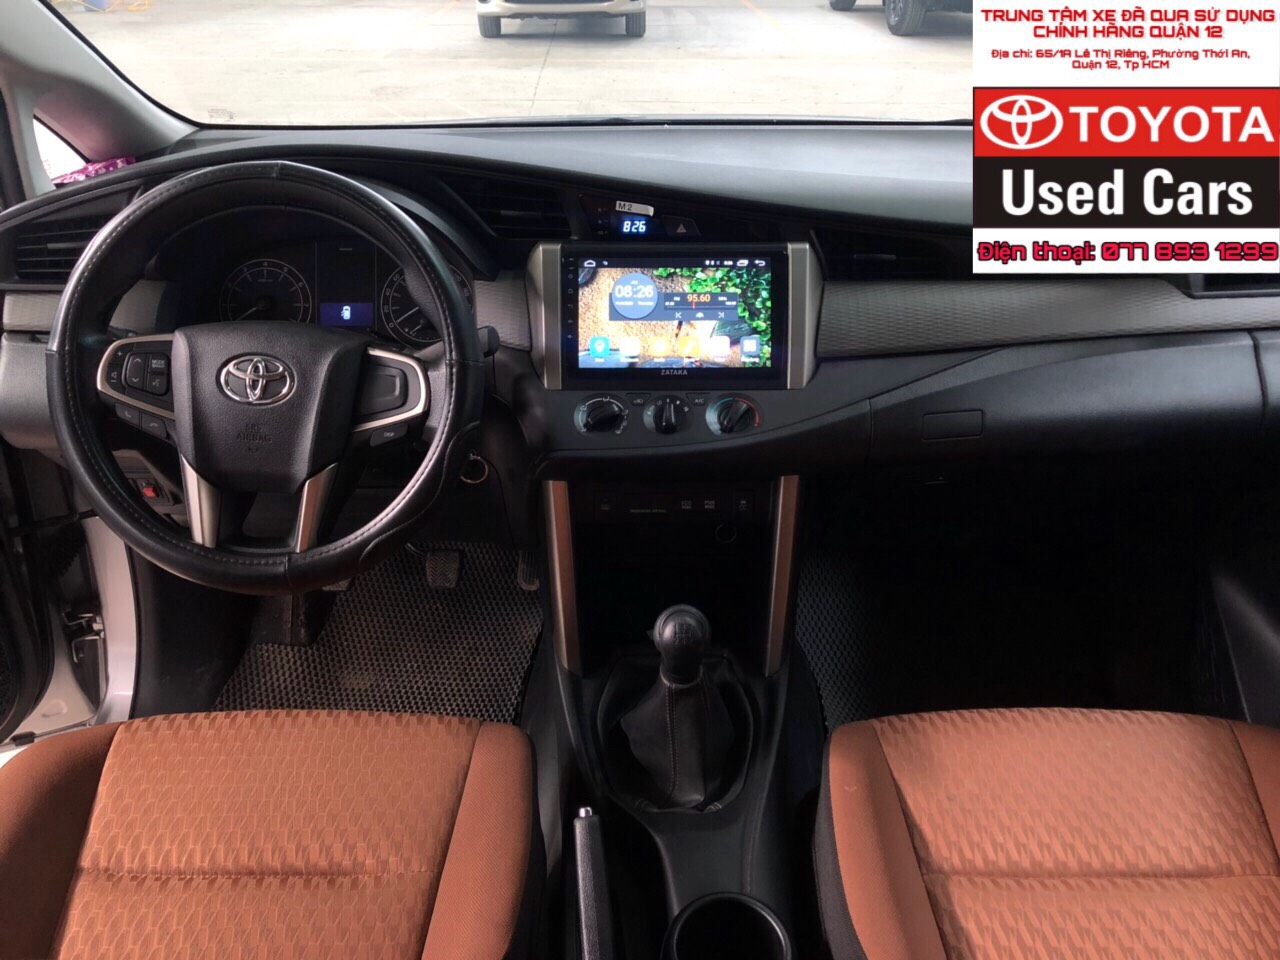 Toyota Innova 2.0E 2019 - Xe chính hãng Toyota Đông Sài Gòn - Giá giảm độc quyền thấp hơn giá niêm yết